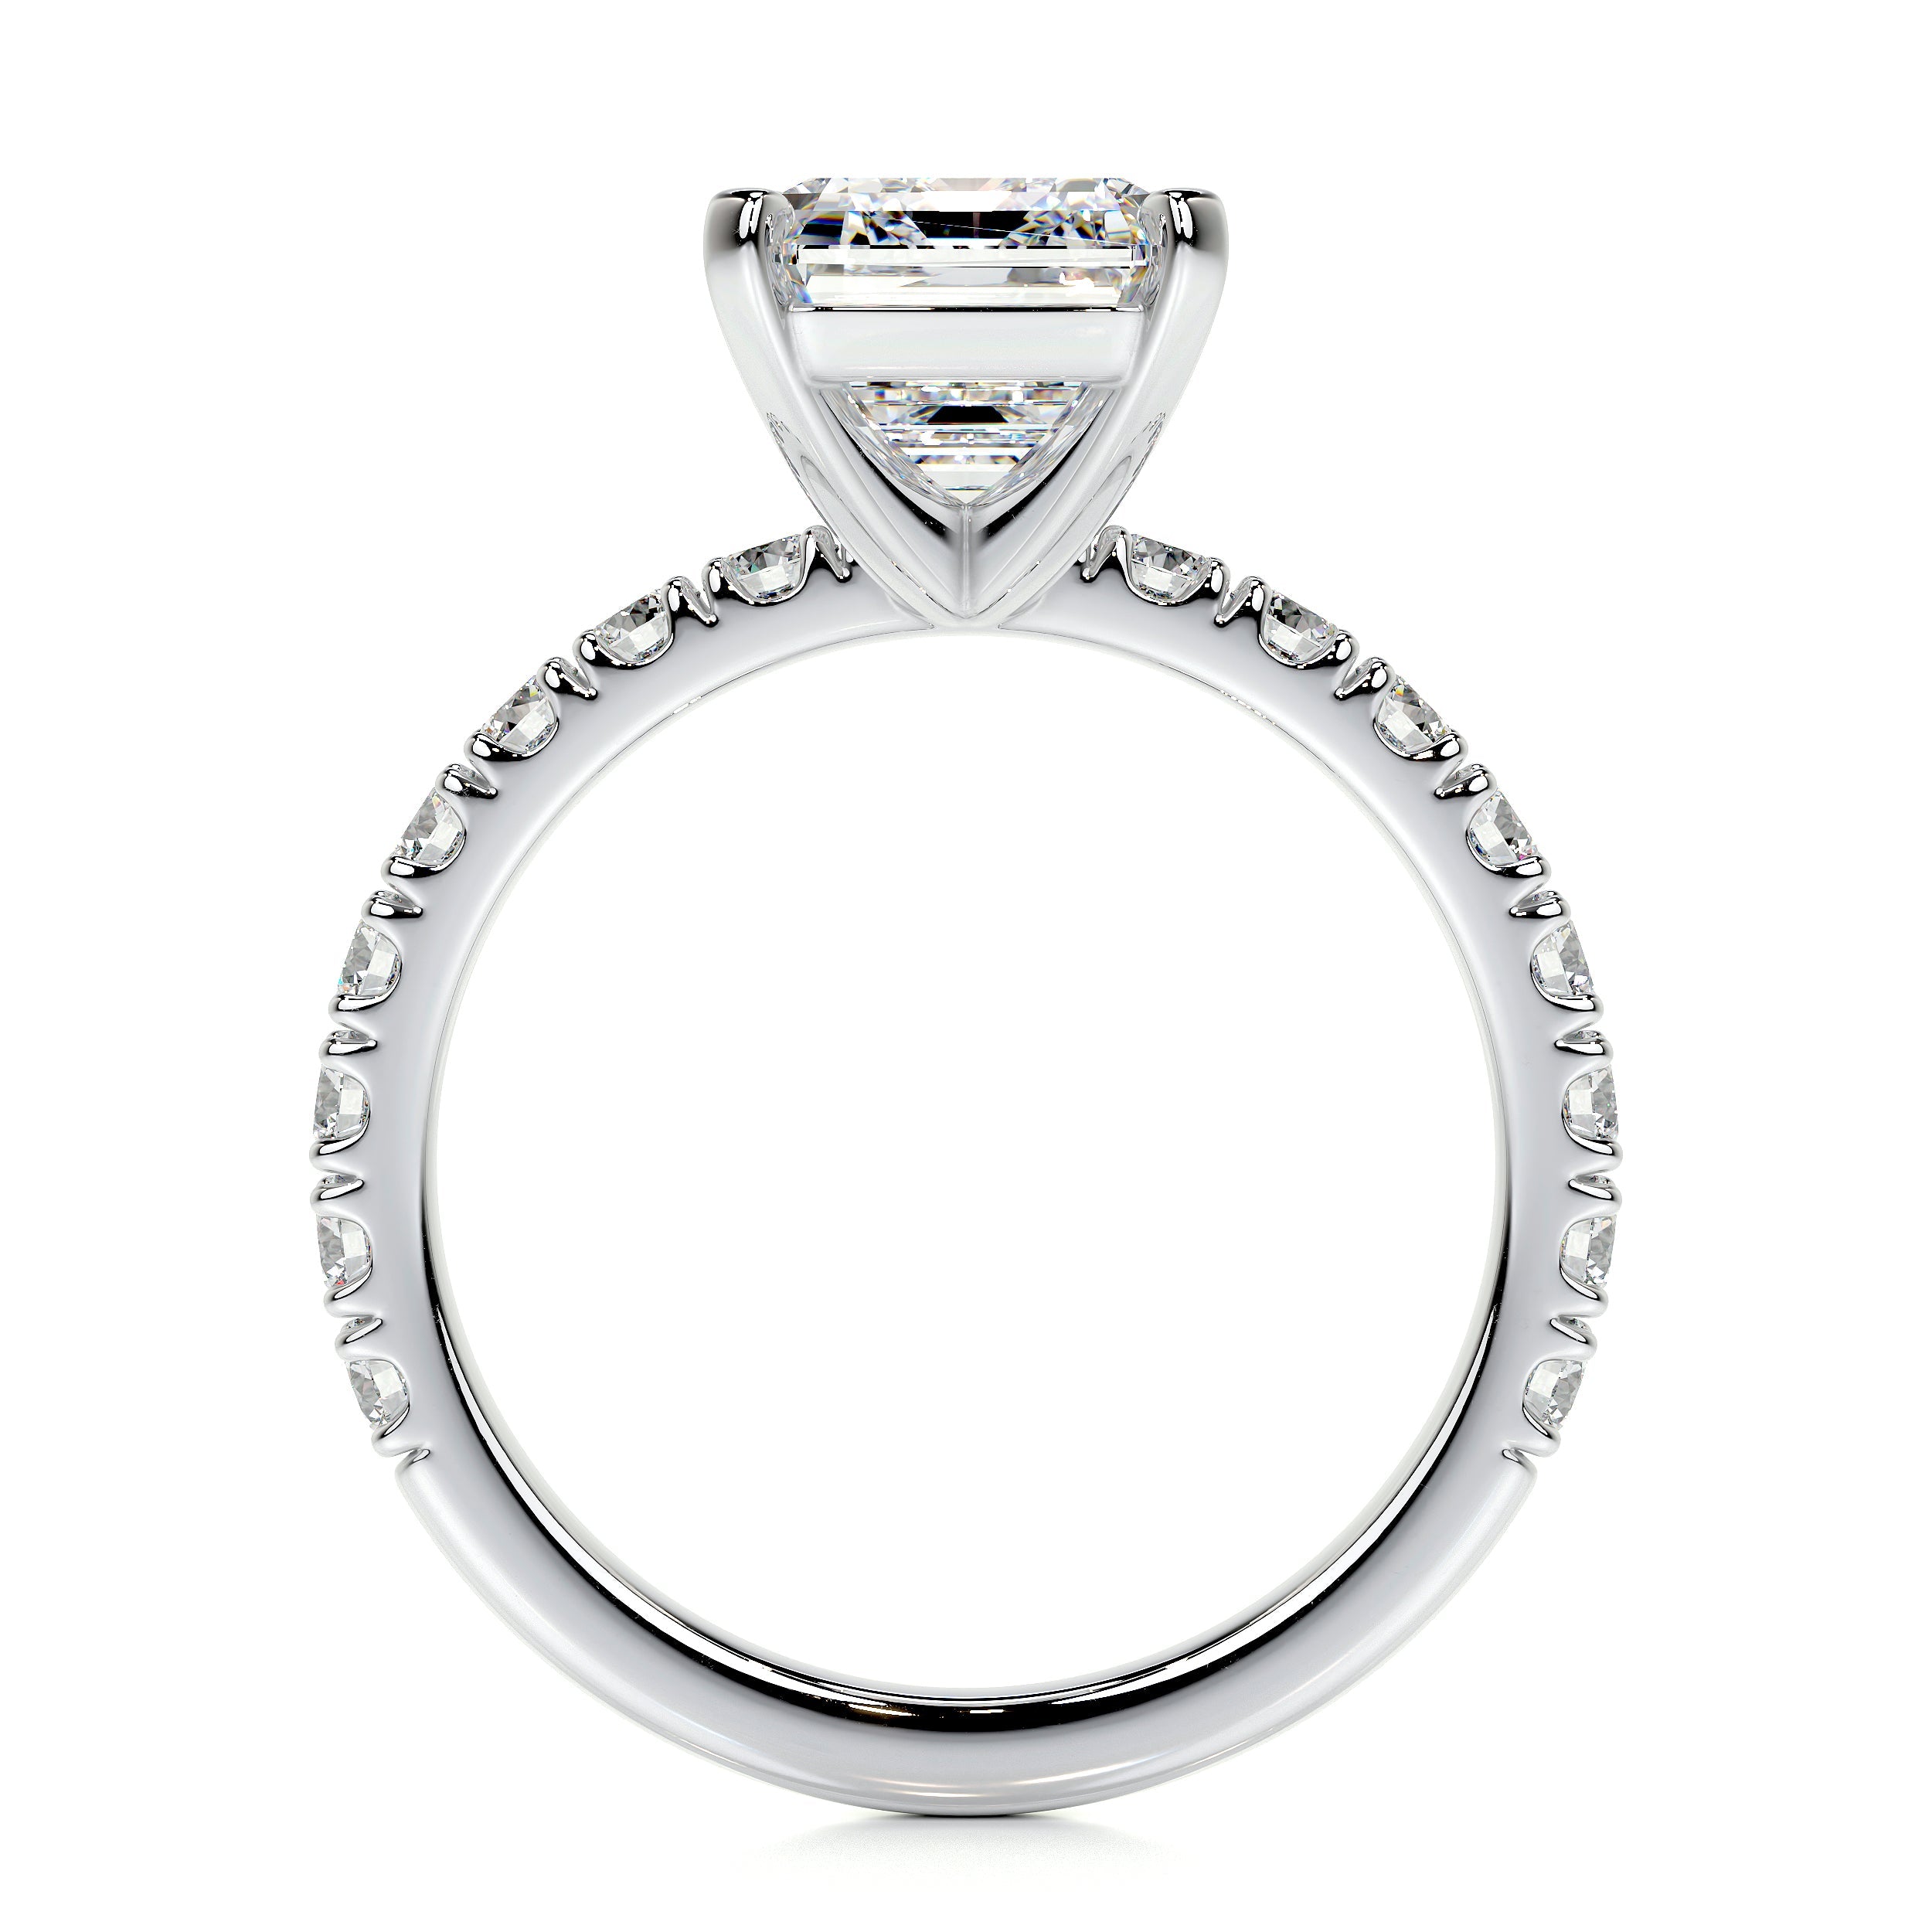 Royal Lab Grown Diamond Ring   (3.5 Carat) -18K White Gold